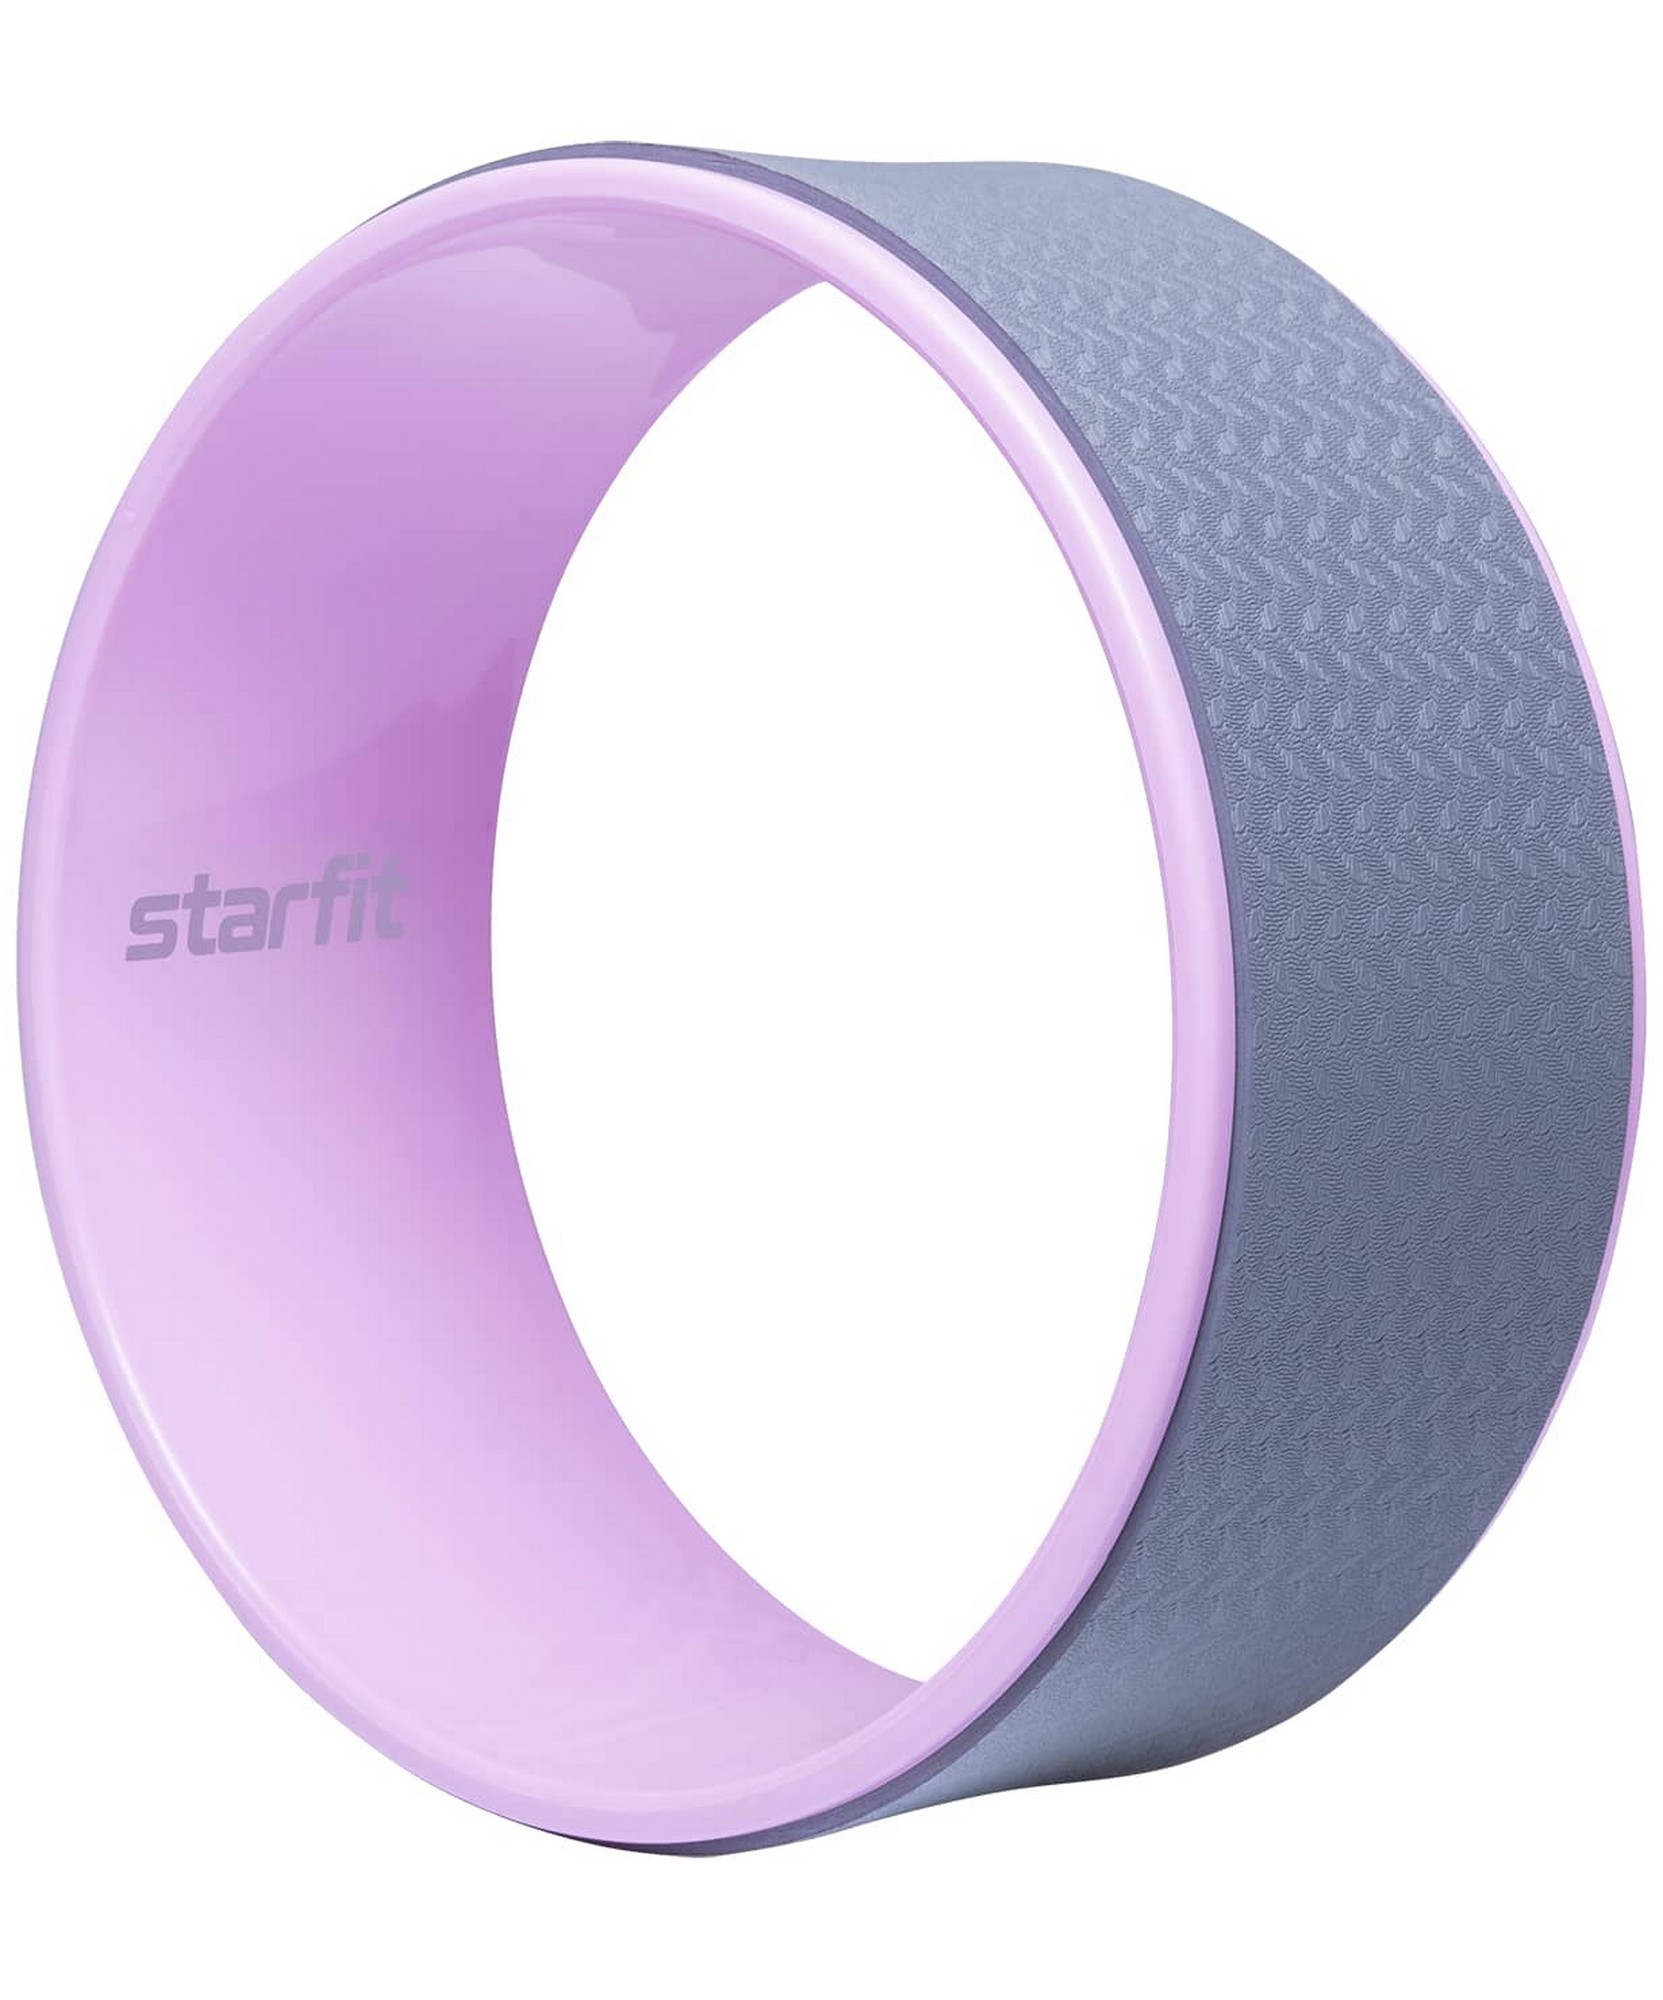 Колесо для йоги Star Fit d32см YW-101 розовый пастель\серый - фото 1